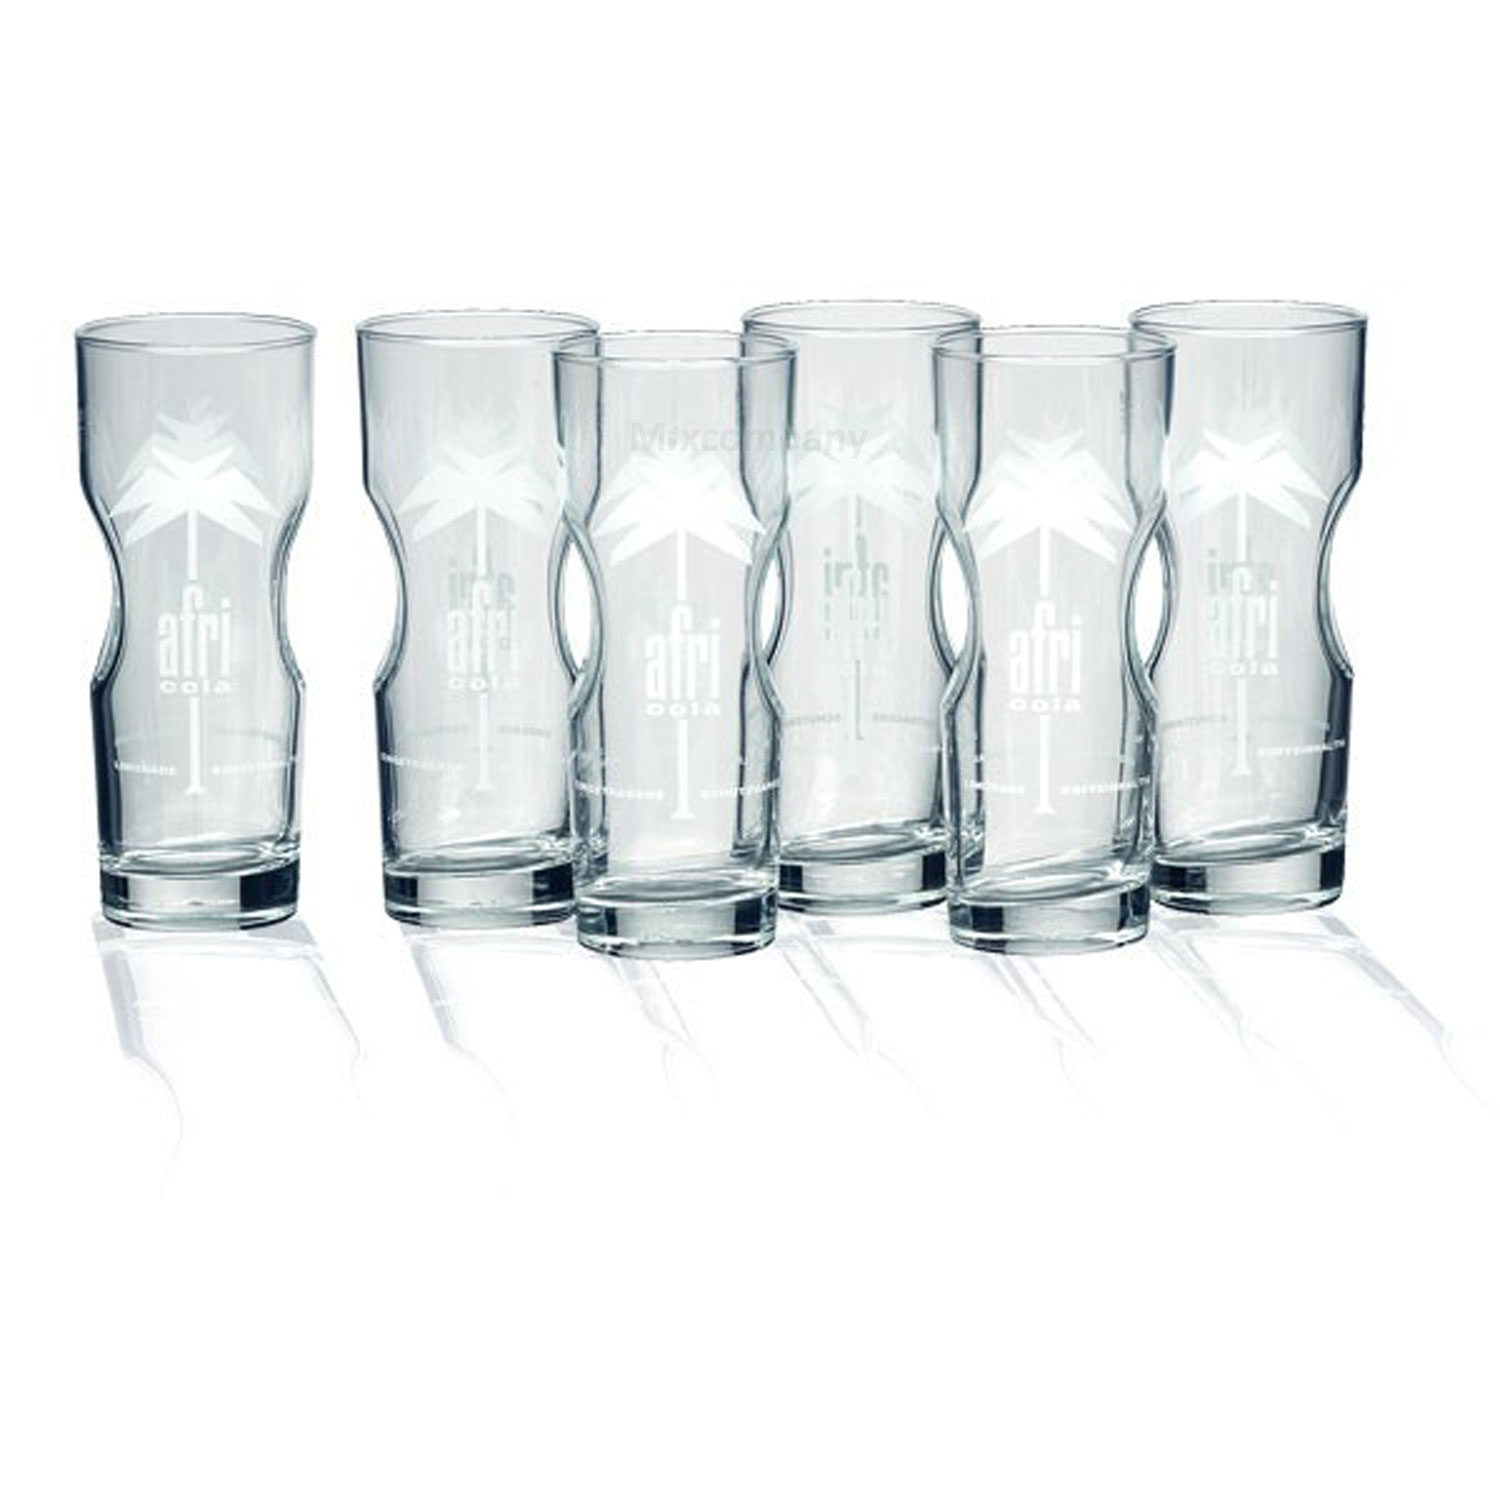 Afri-Cola Glas Gläser-Set - 6stk